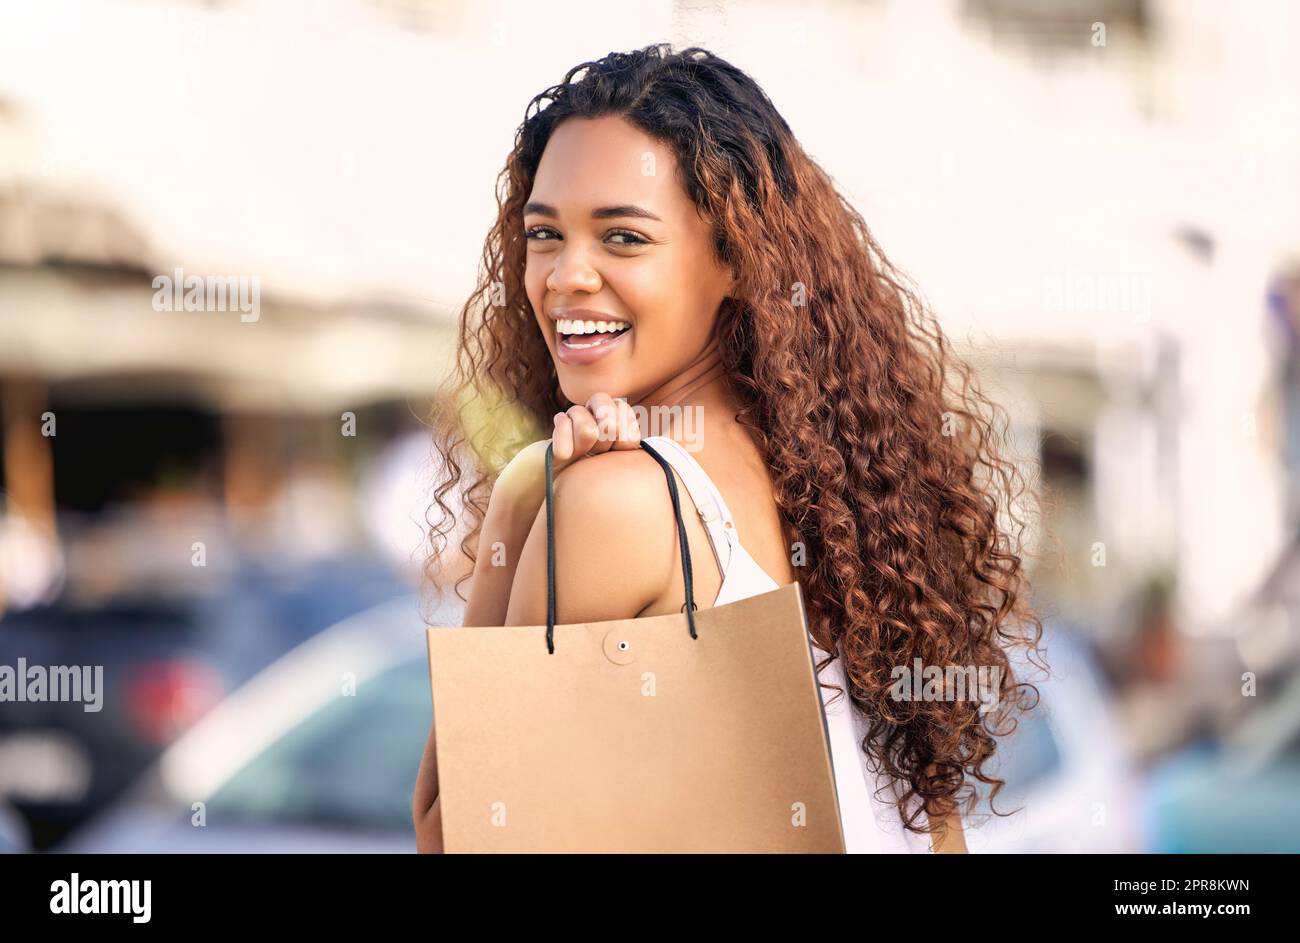 Bereit, eine Fashionista zu werden. Eine junge Frau genießt einen Tag des Solo-Shopping. Stockfoto